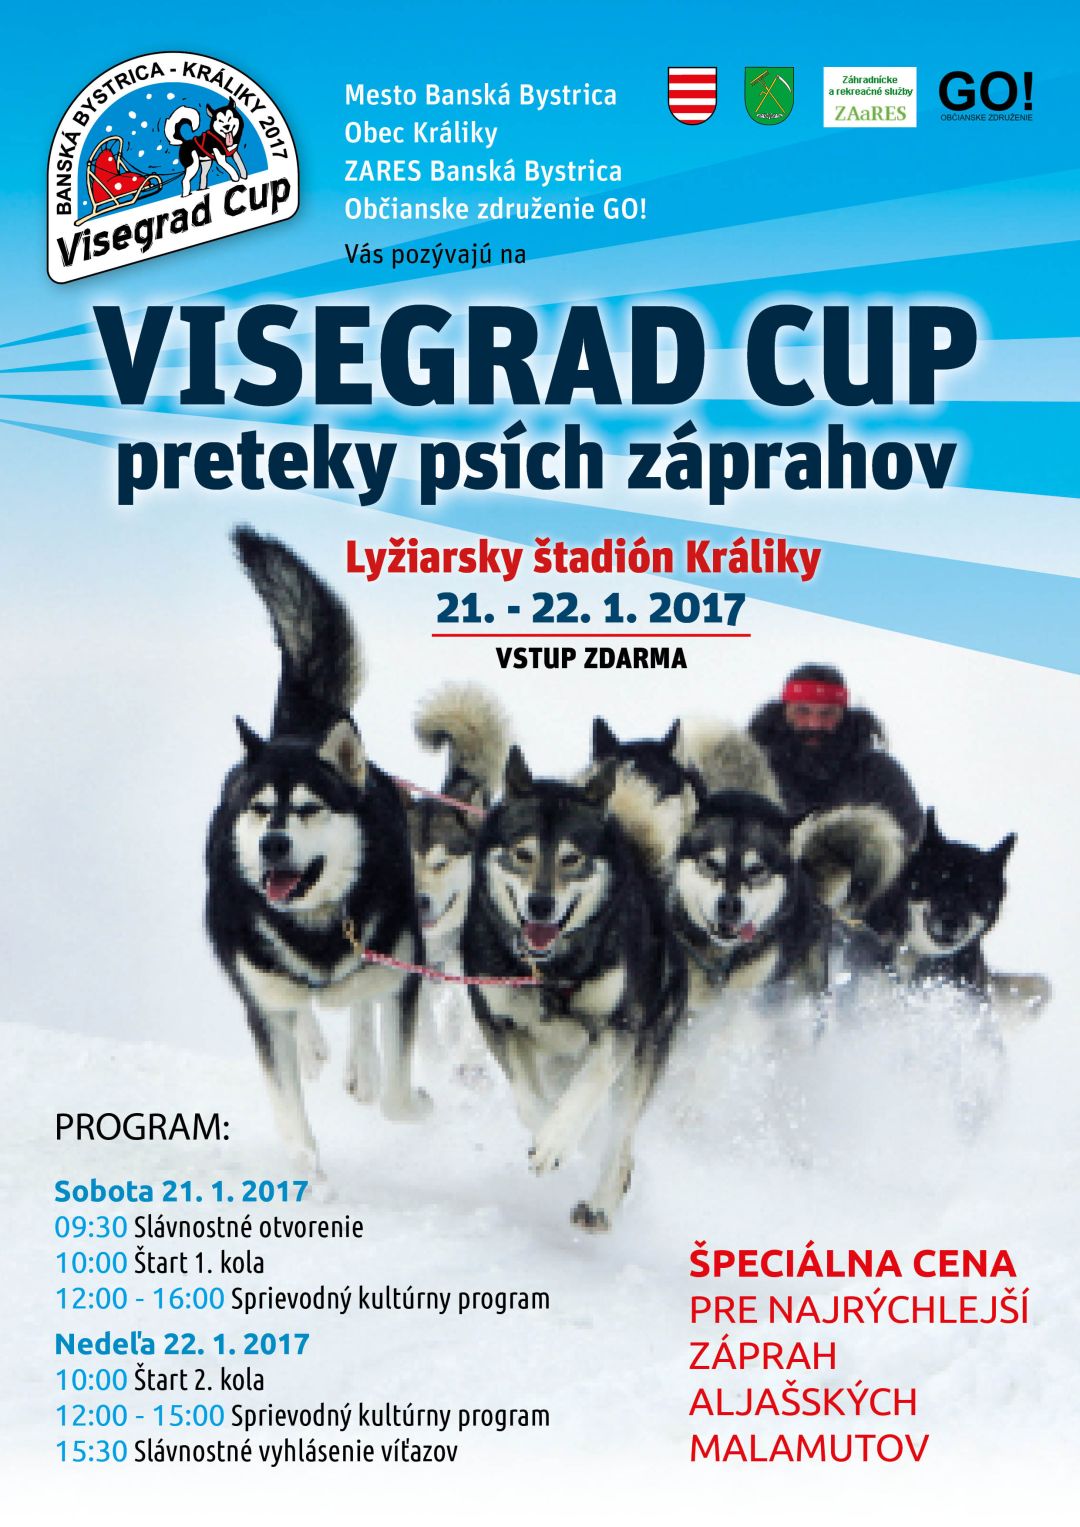 Visegrad Cup Krliky  2017 - preteky psch zprahov 